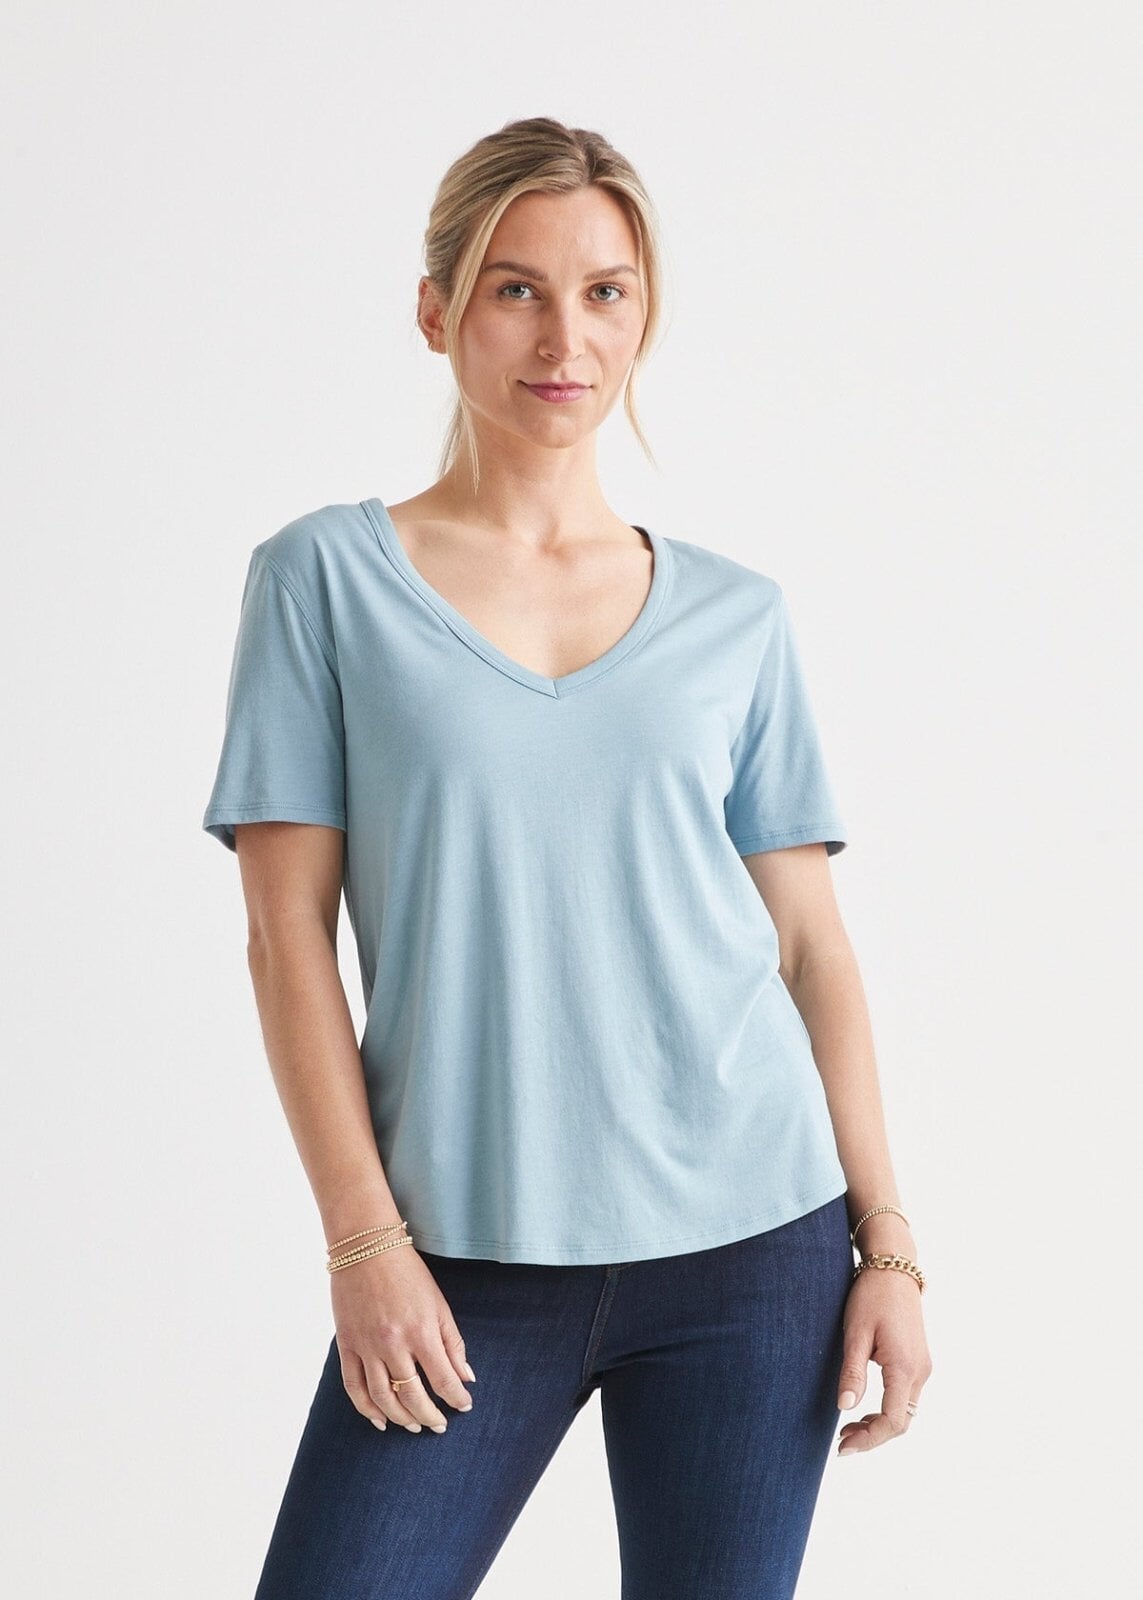 Women's Soft Lightweight Blue V-Neck T-Shirt Front